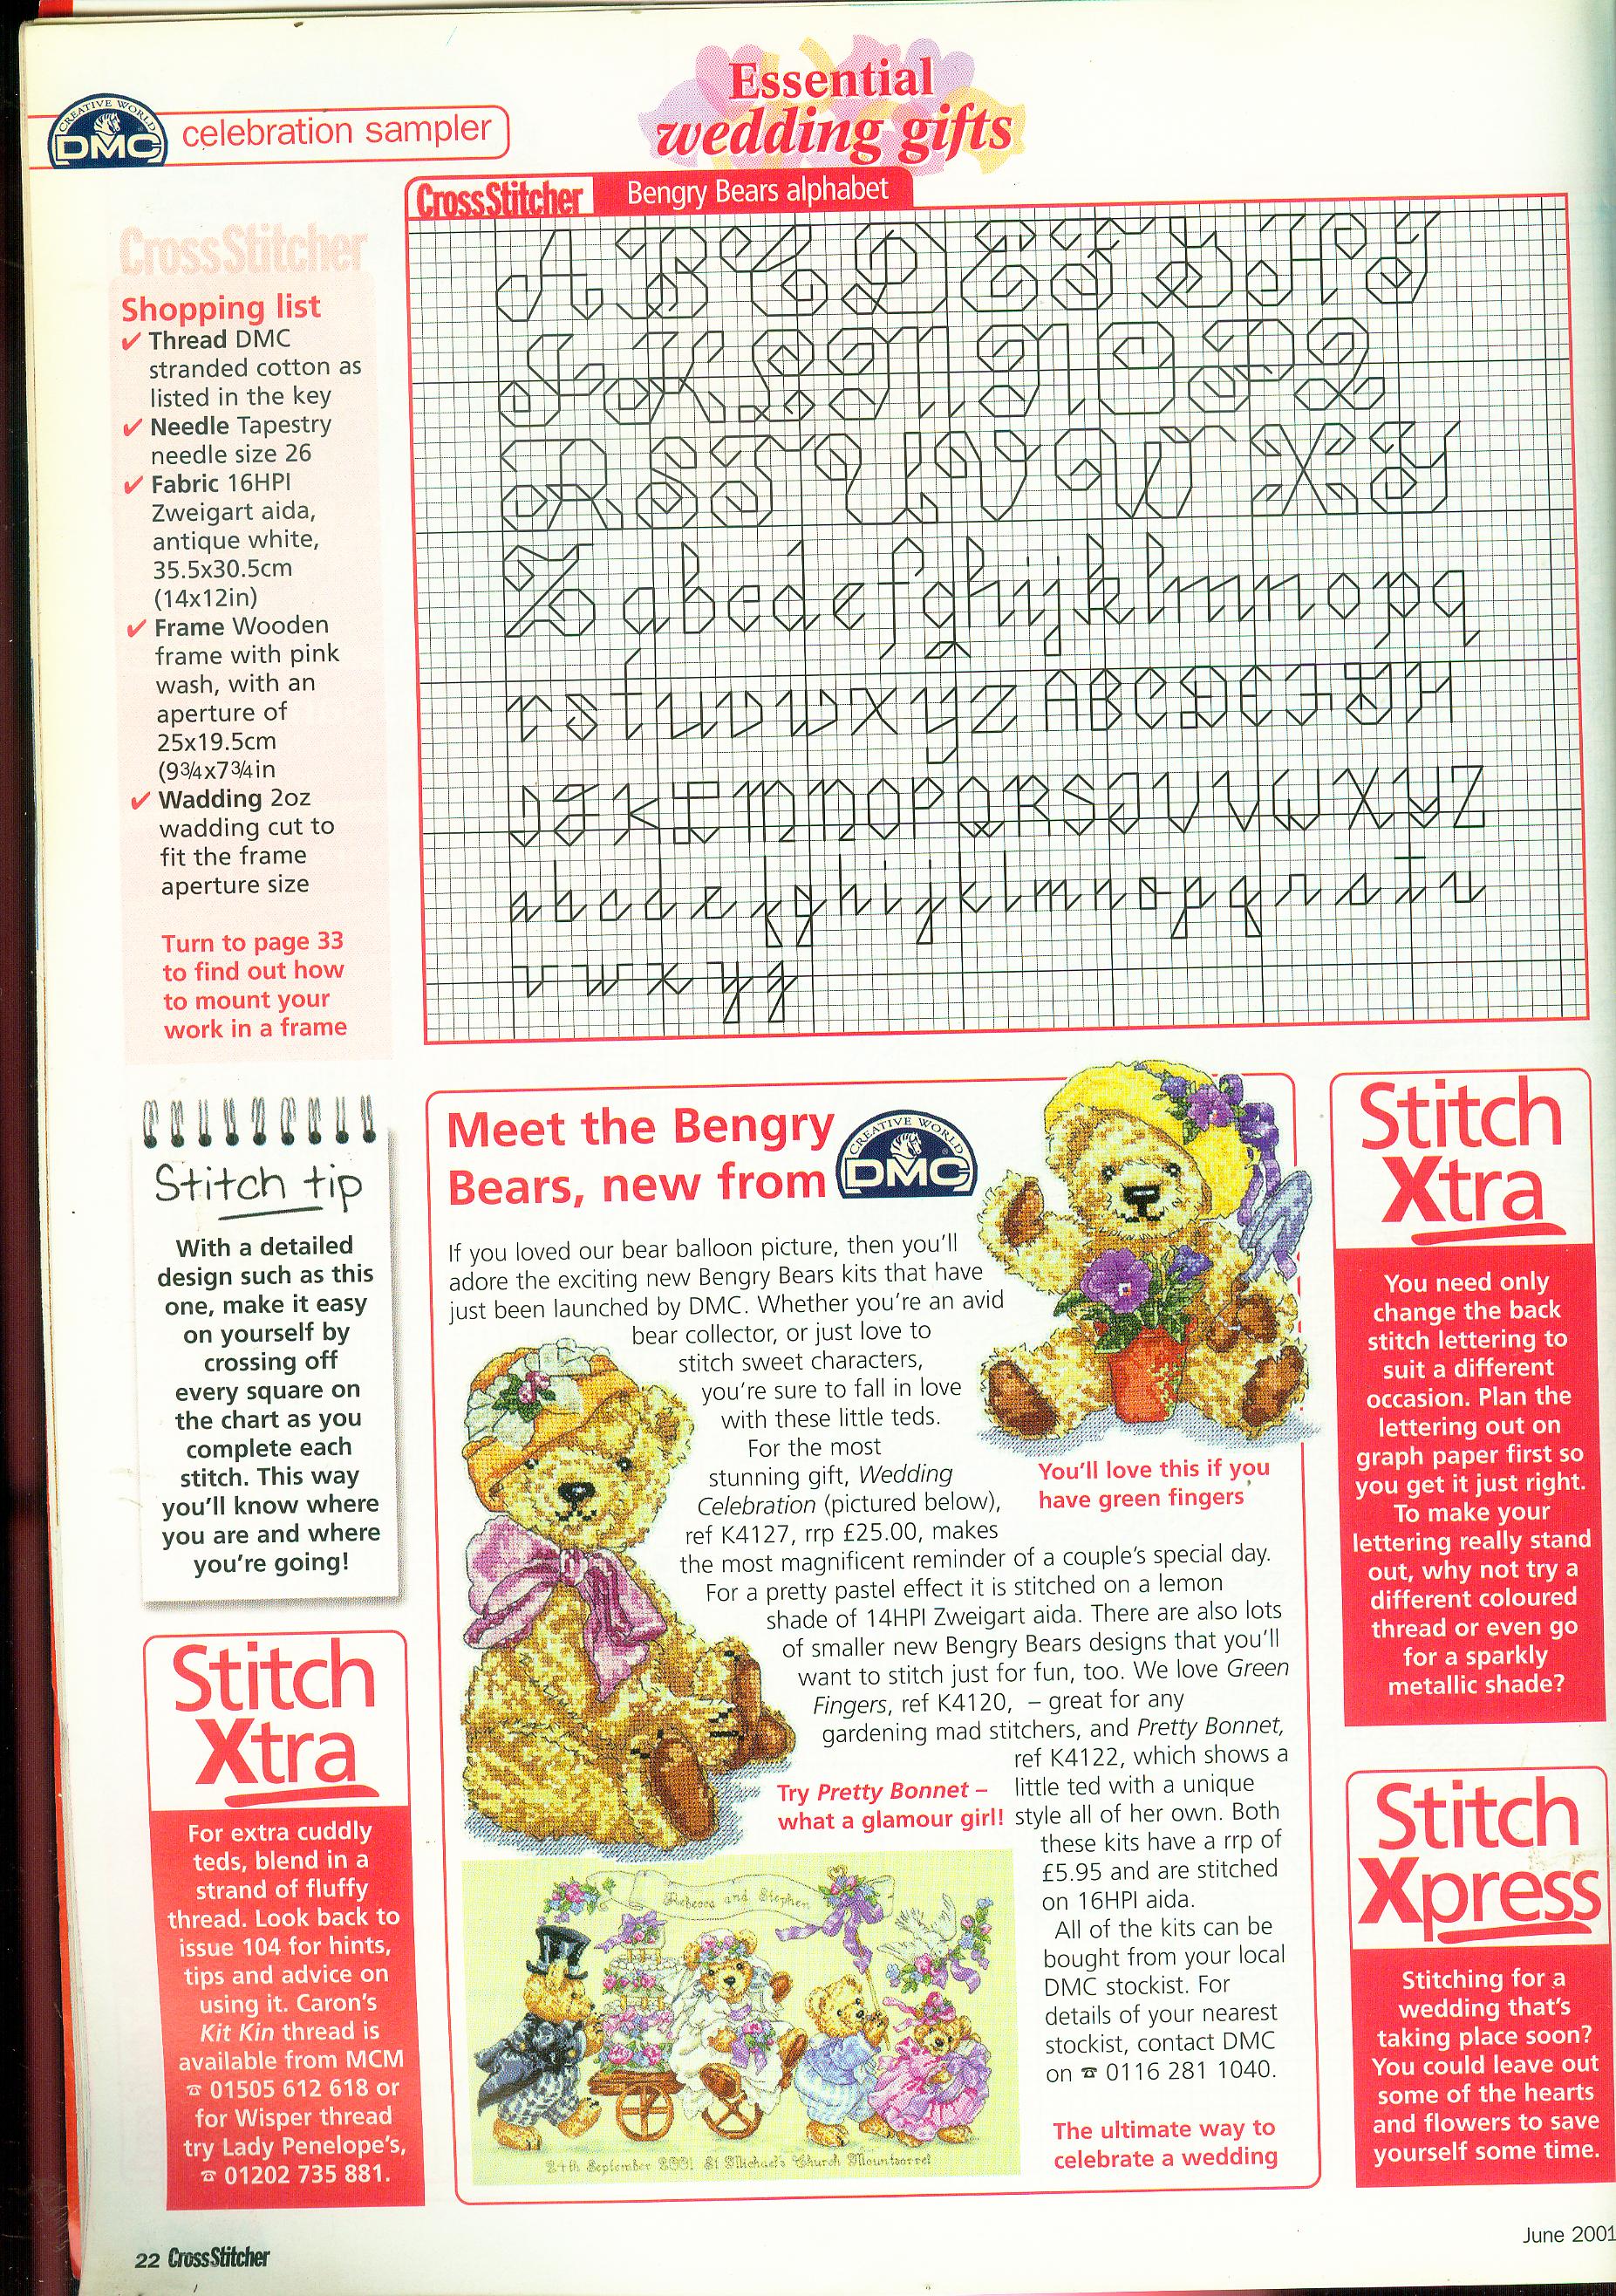 Loveable bears cross stitch pattern (4)